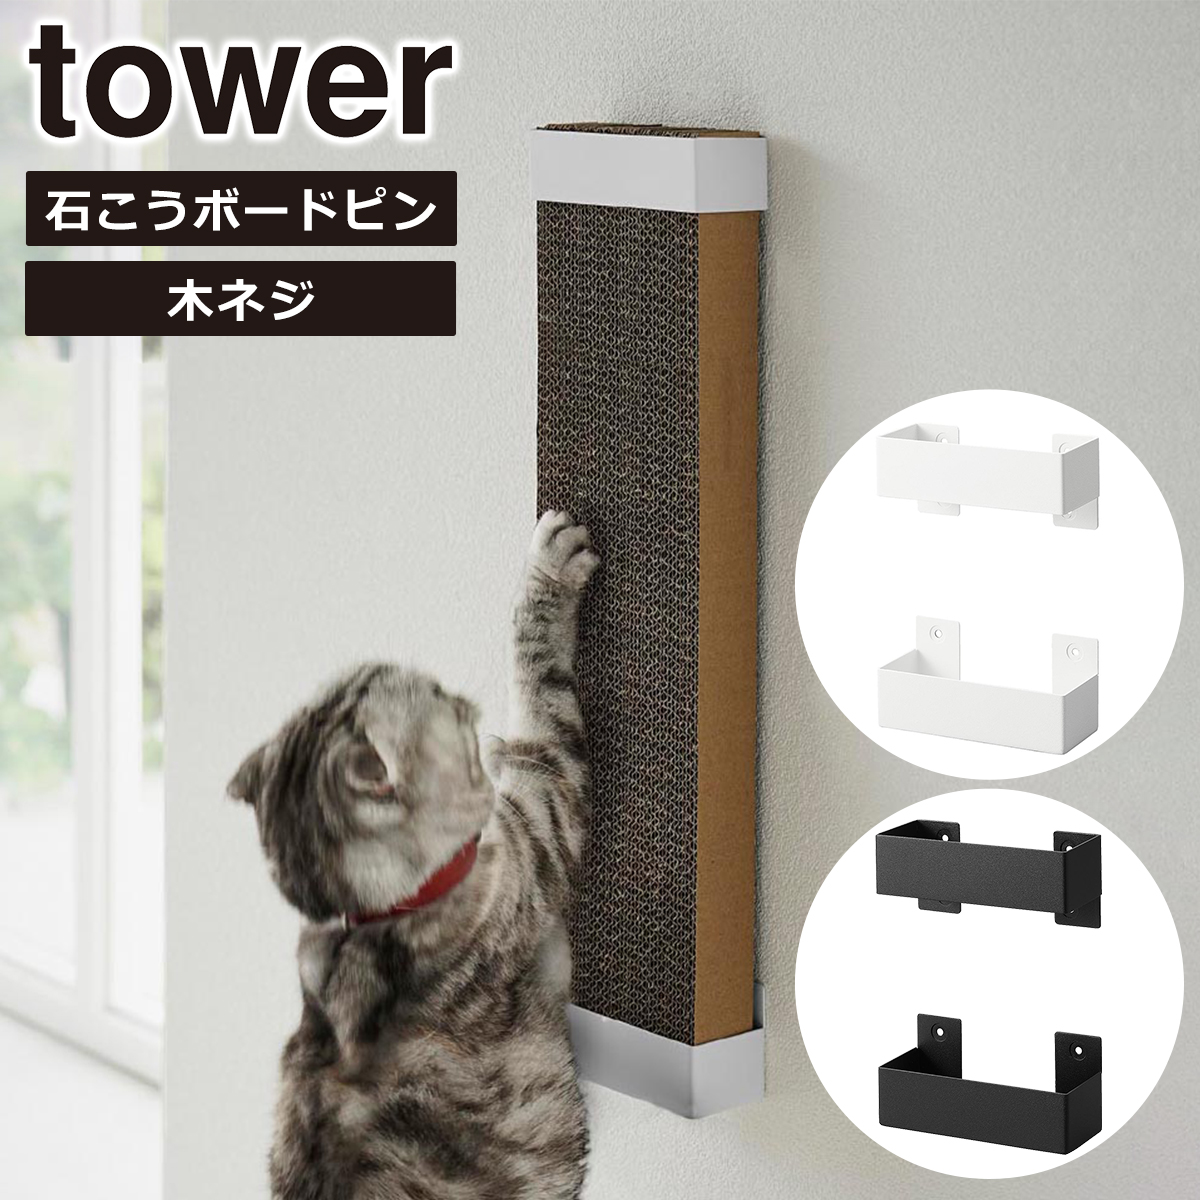 山崎実業 tower タワー 石こうボード壁対応ウォール猫用爪とぎホルダー 4096 4097 yamazaki 公式 オンラインショップ｜daily-3